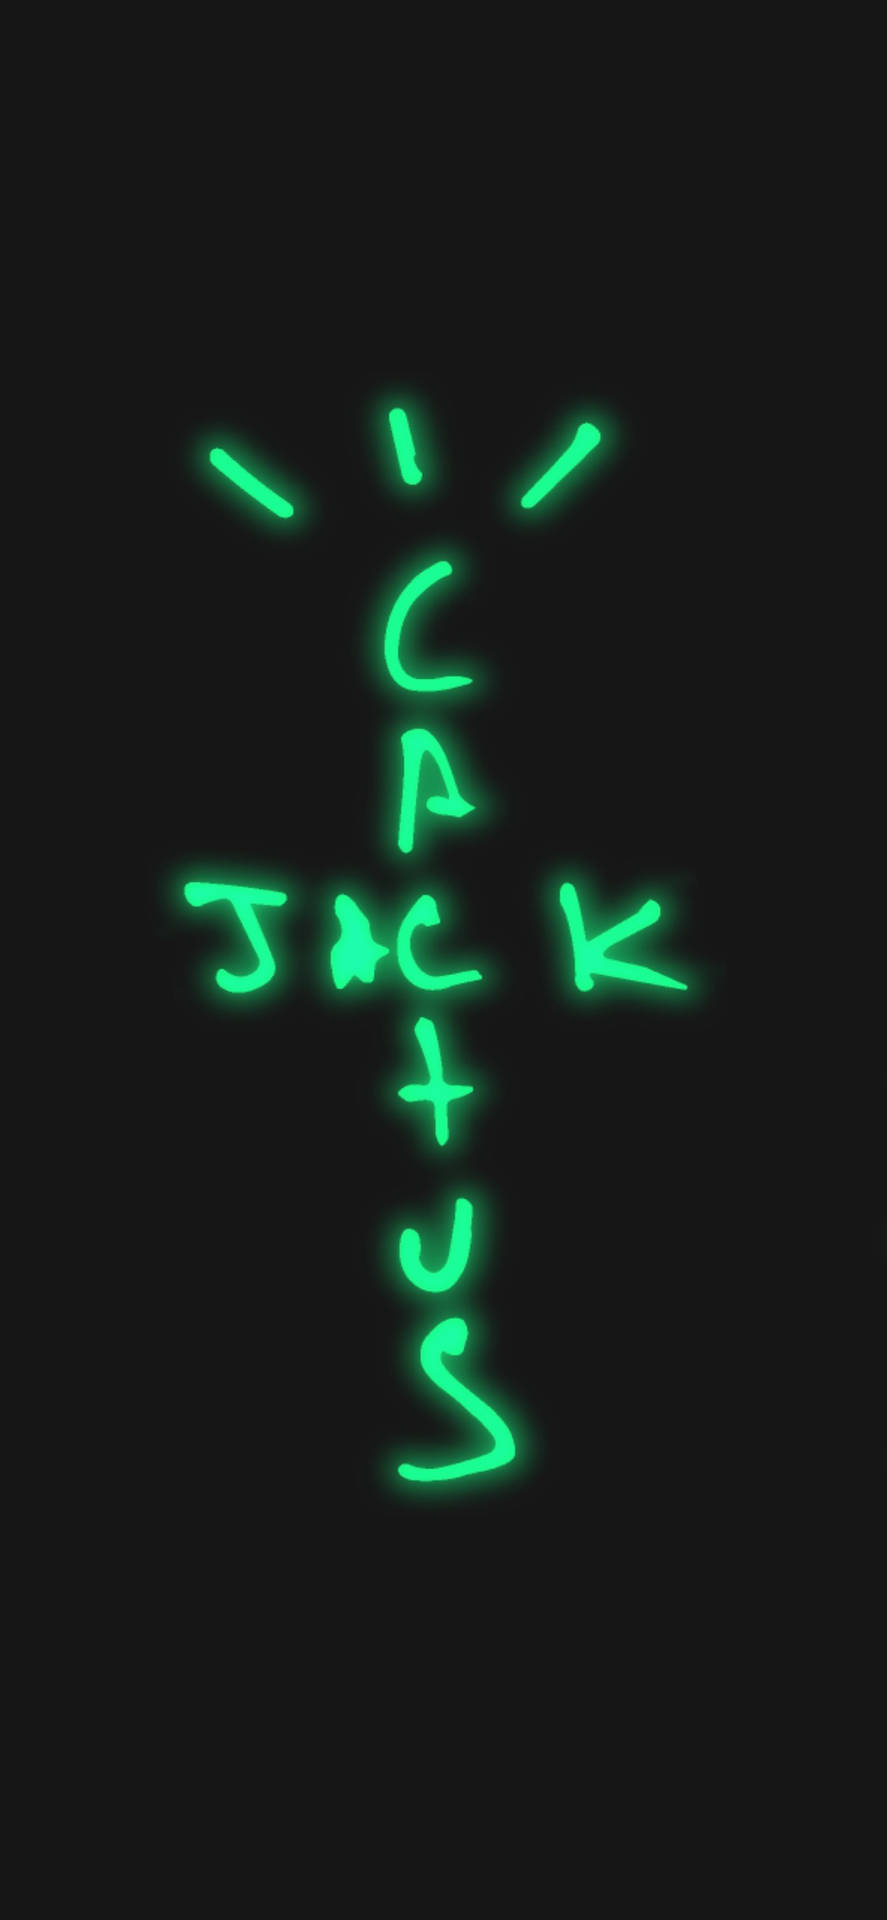 Cactus Jack Travis Scott Neon Green Aesthetic Wallpaper